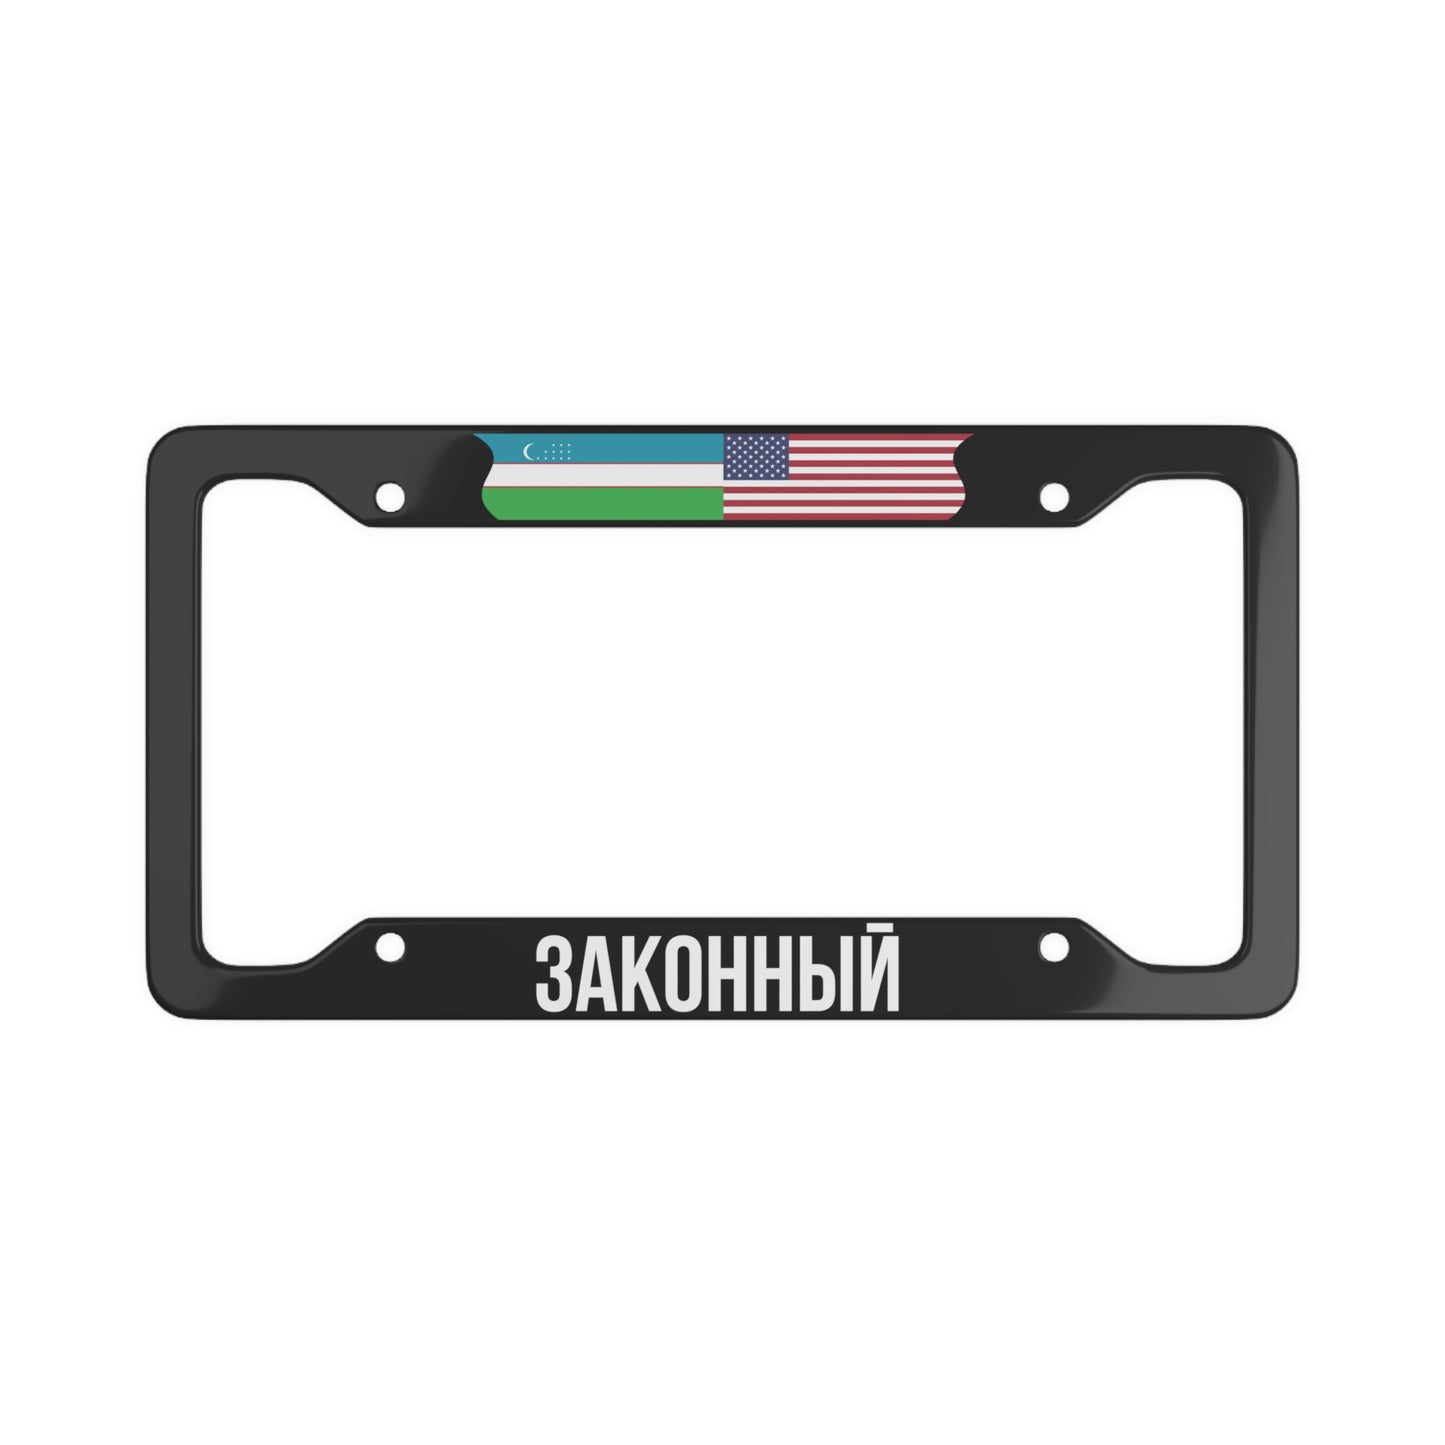 ЗАКОННЫЙ with flag License Plate Frame